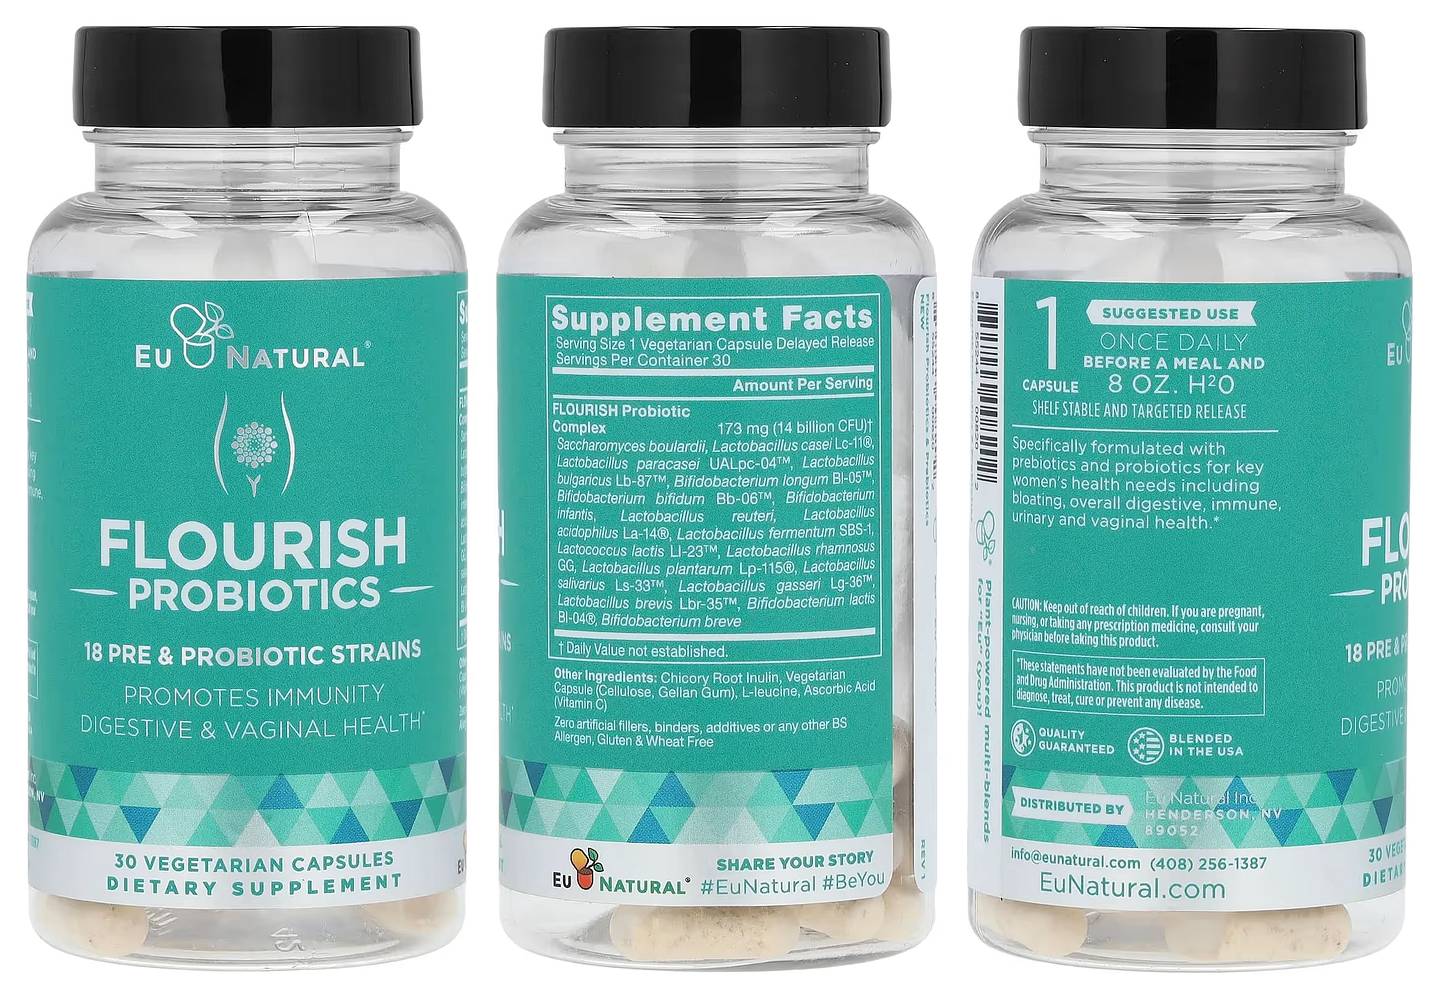 Eu Natural, Flourish Probiotics packaging